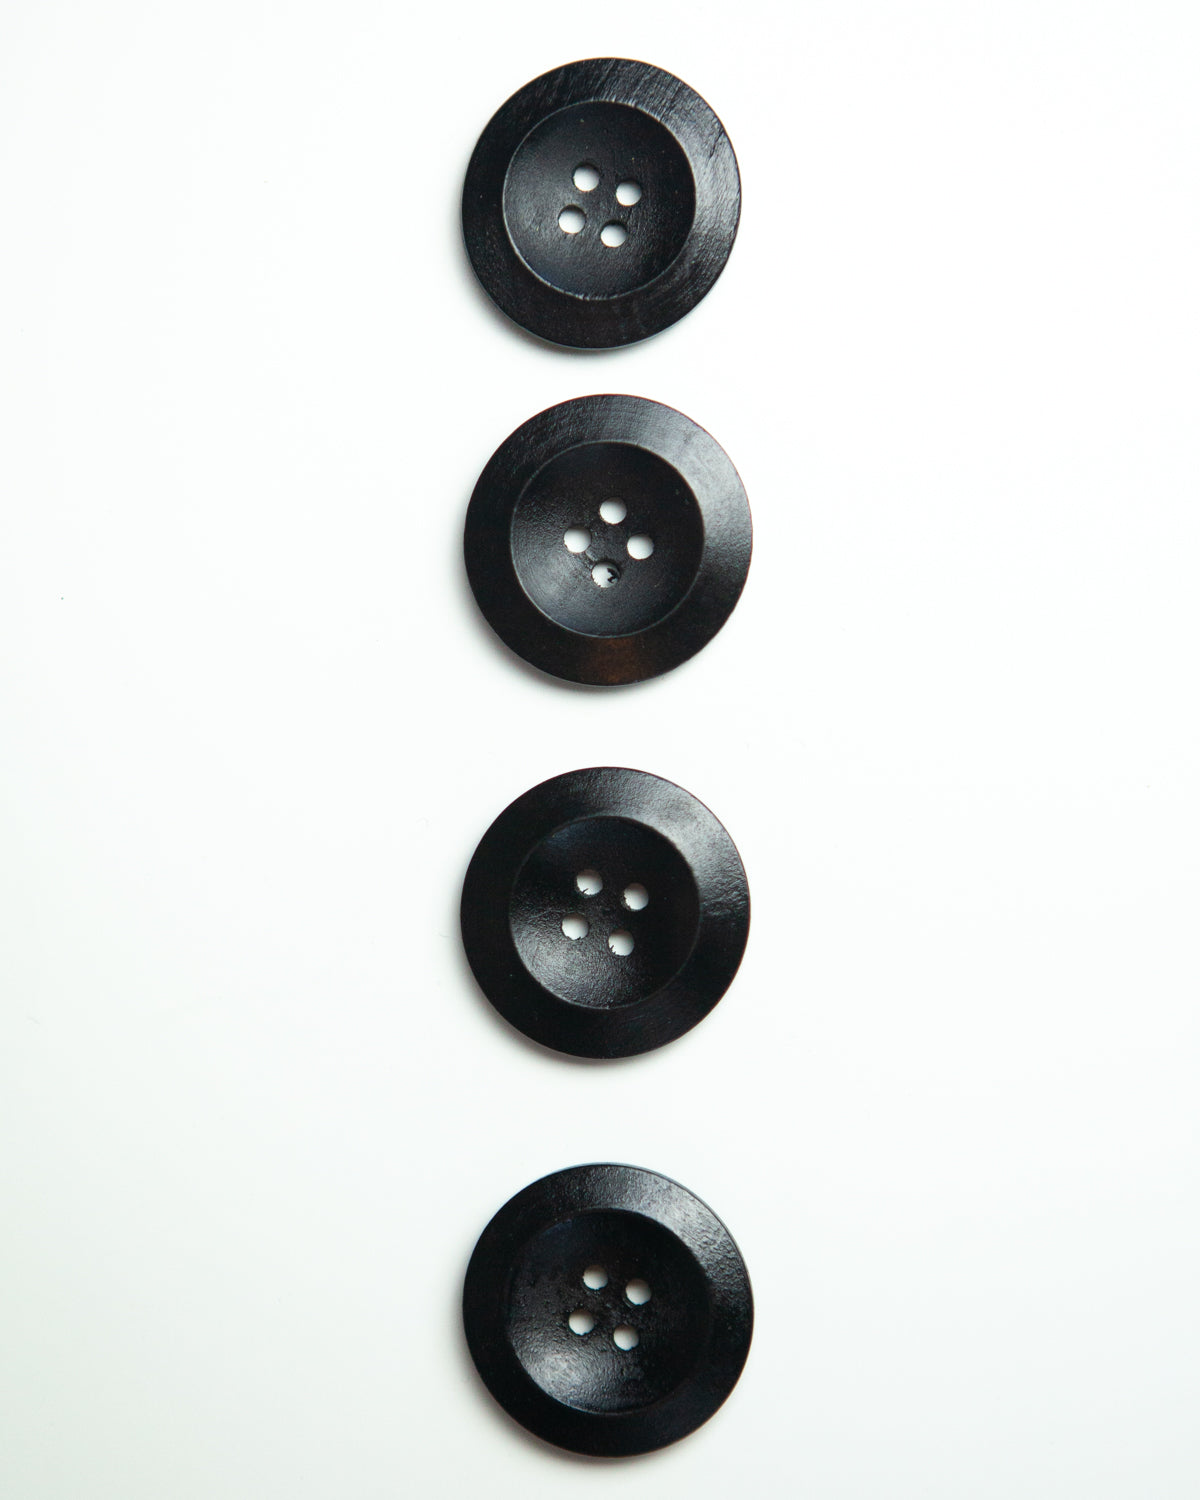 1 1/8 Wooden Buttons – True Bias